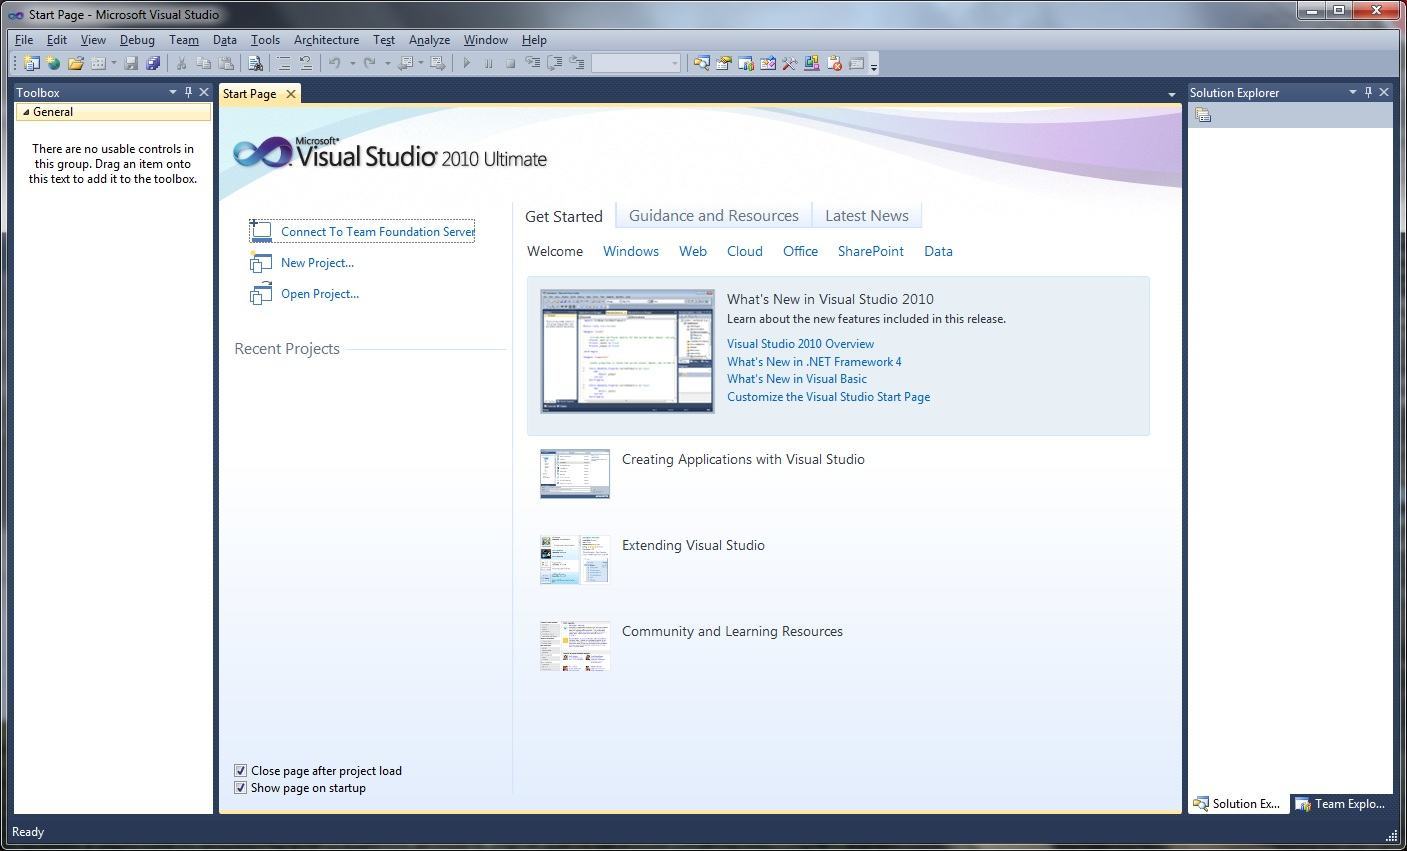 Vb software. Visual Studio 2010 Интерфейс. Интерфейс Visual Basic 2010. Visual Basic как отправлять данные в порт. Пишу на Visual ASM com Port.